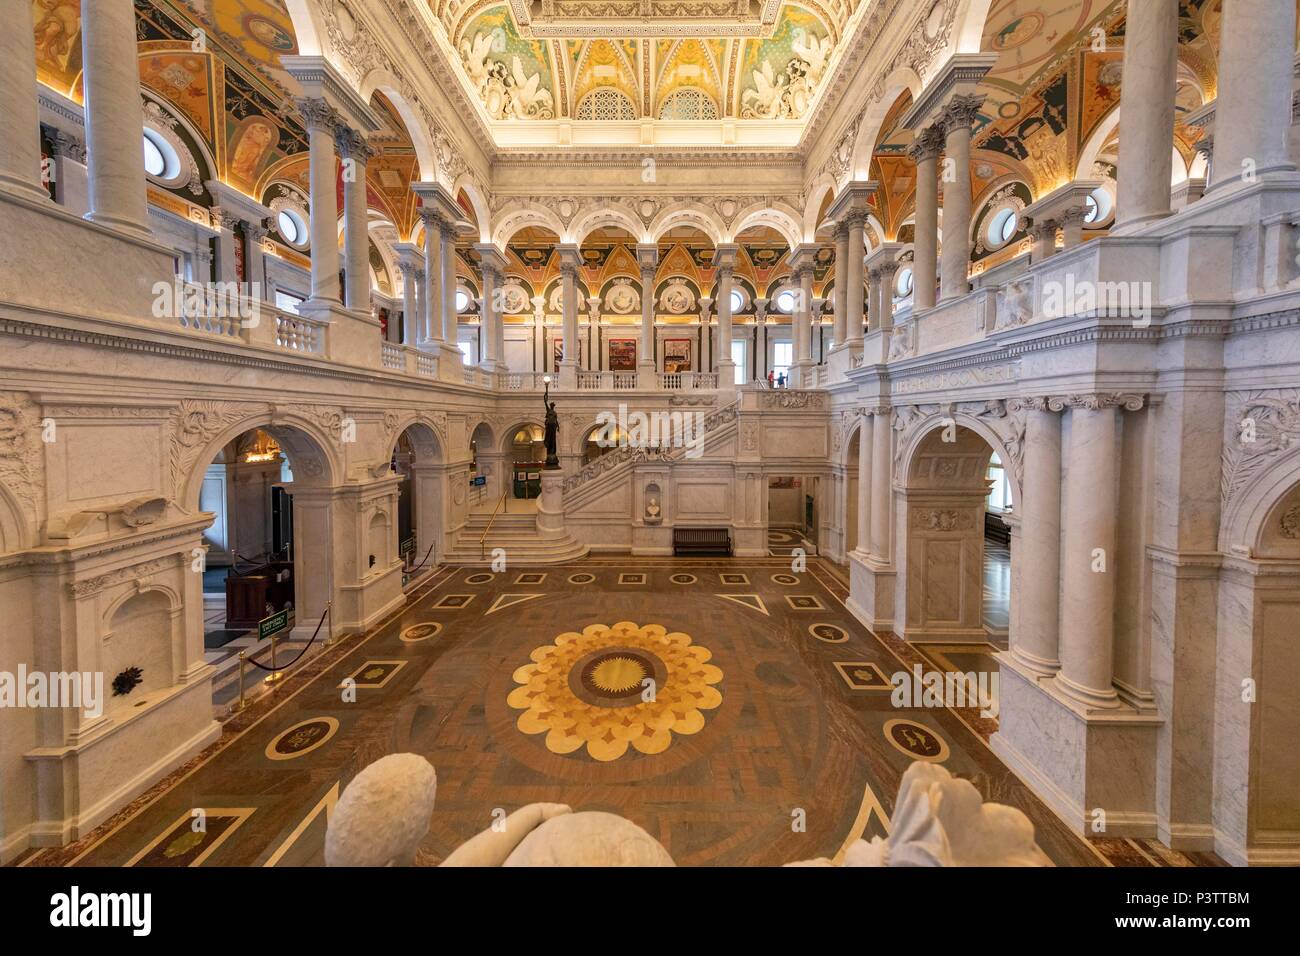 La grande sala interna. La Biblioteca del Congresso. Washington DC, Stati Uniti d'America Foto Stock